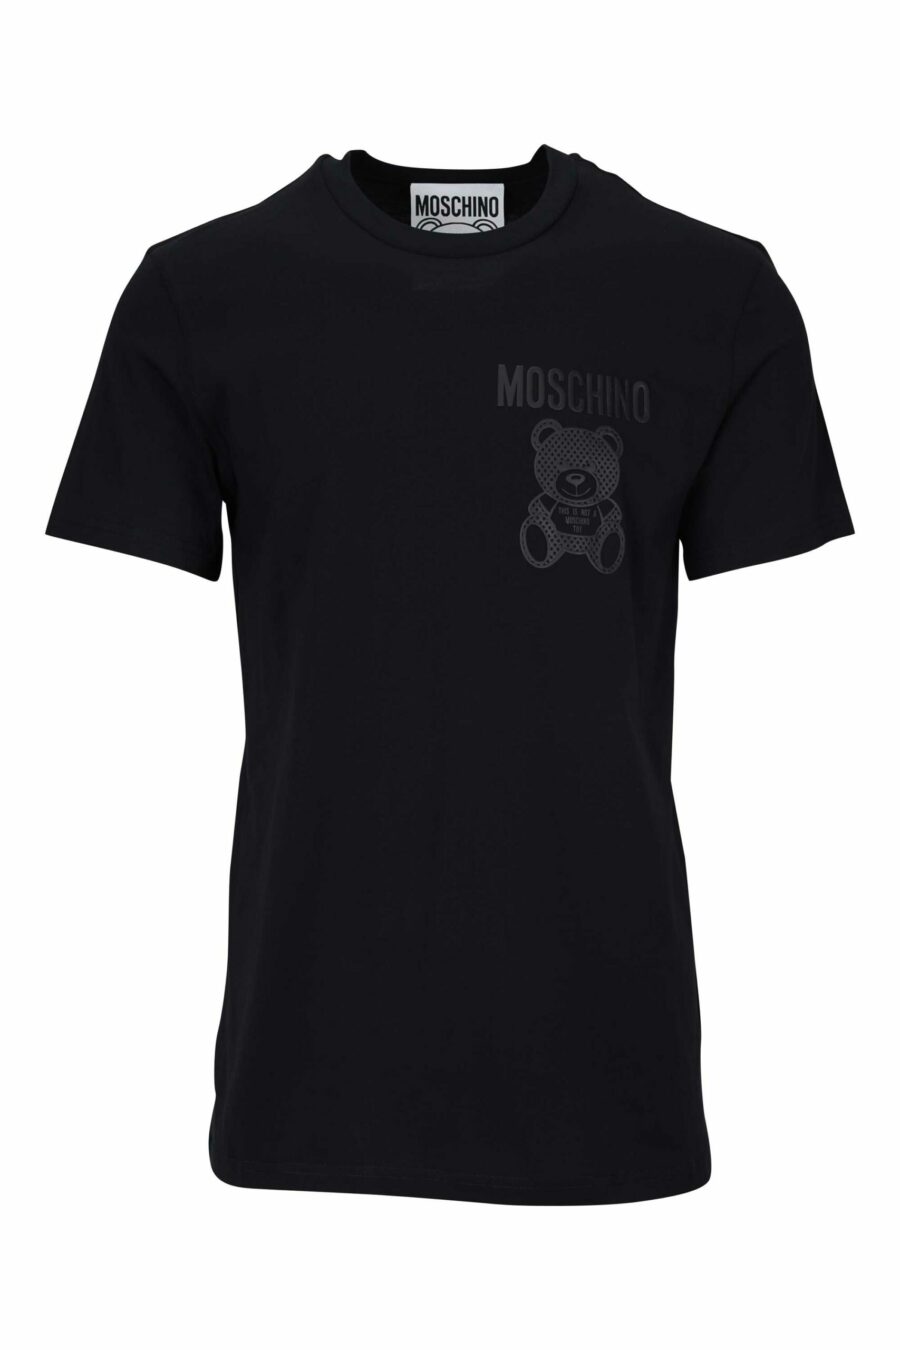 T-shirt preta com minilogo de urso monocromático pontilhado - 667113455969 scaled